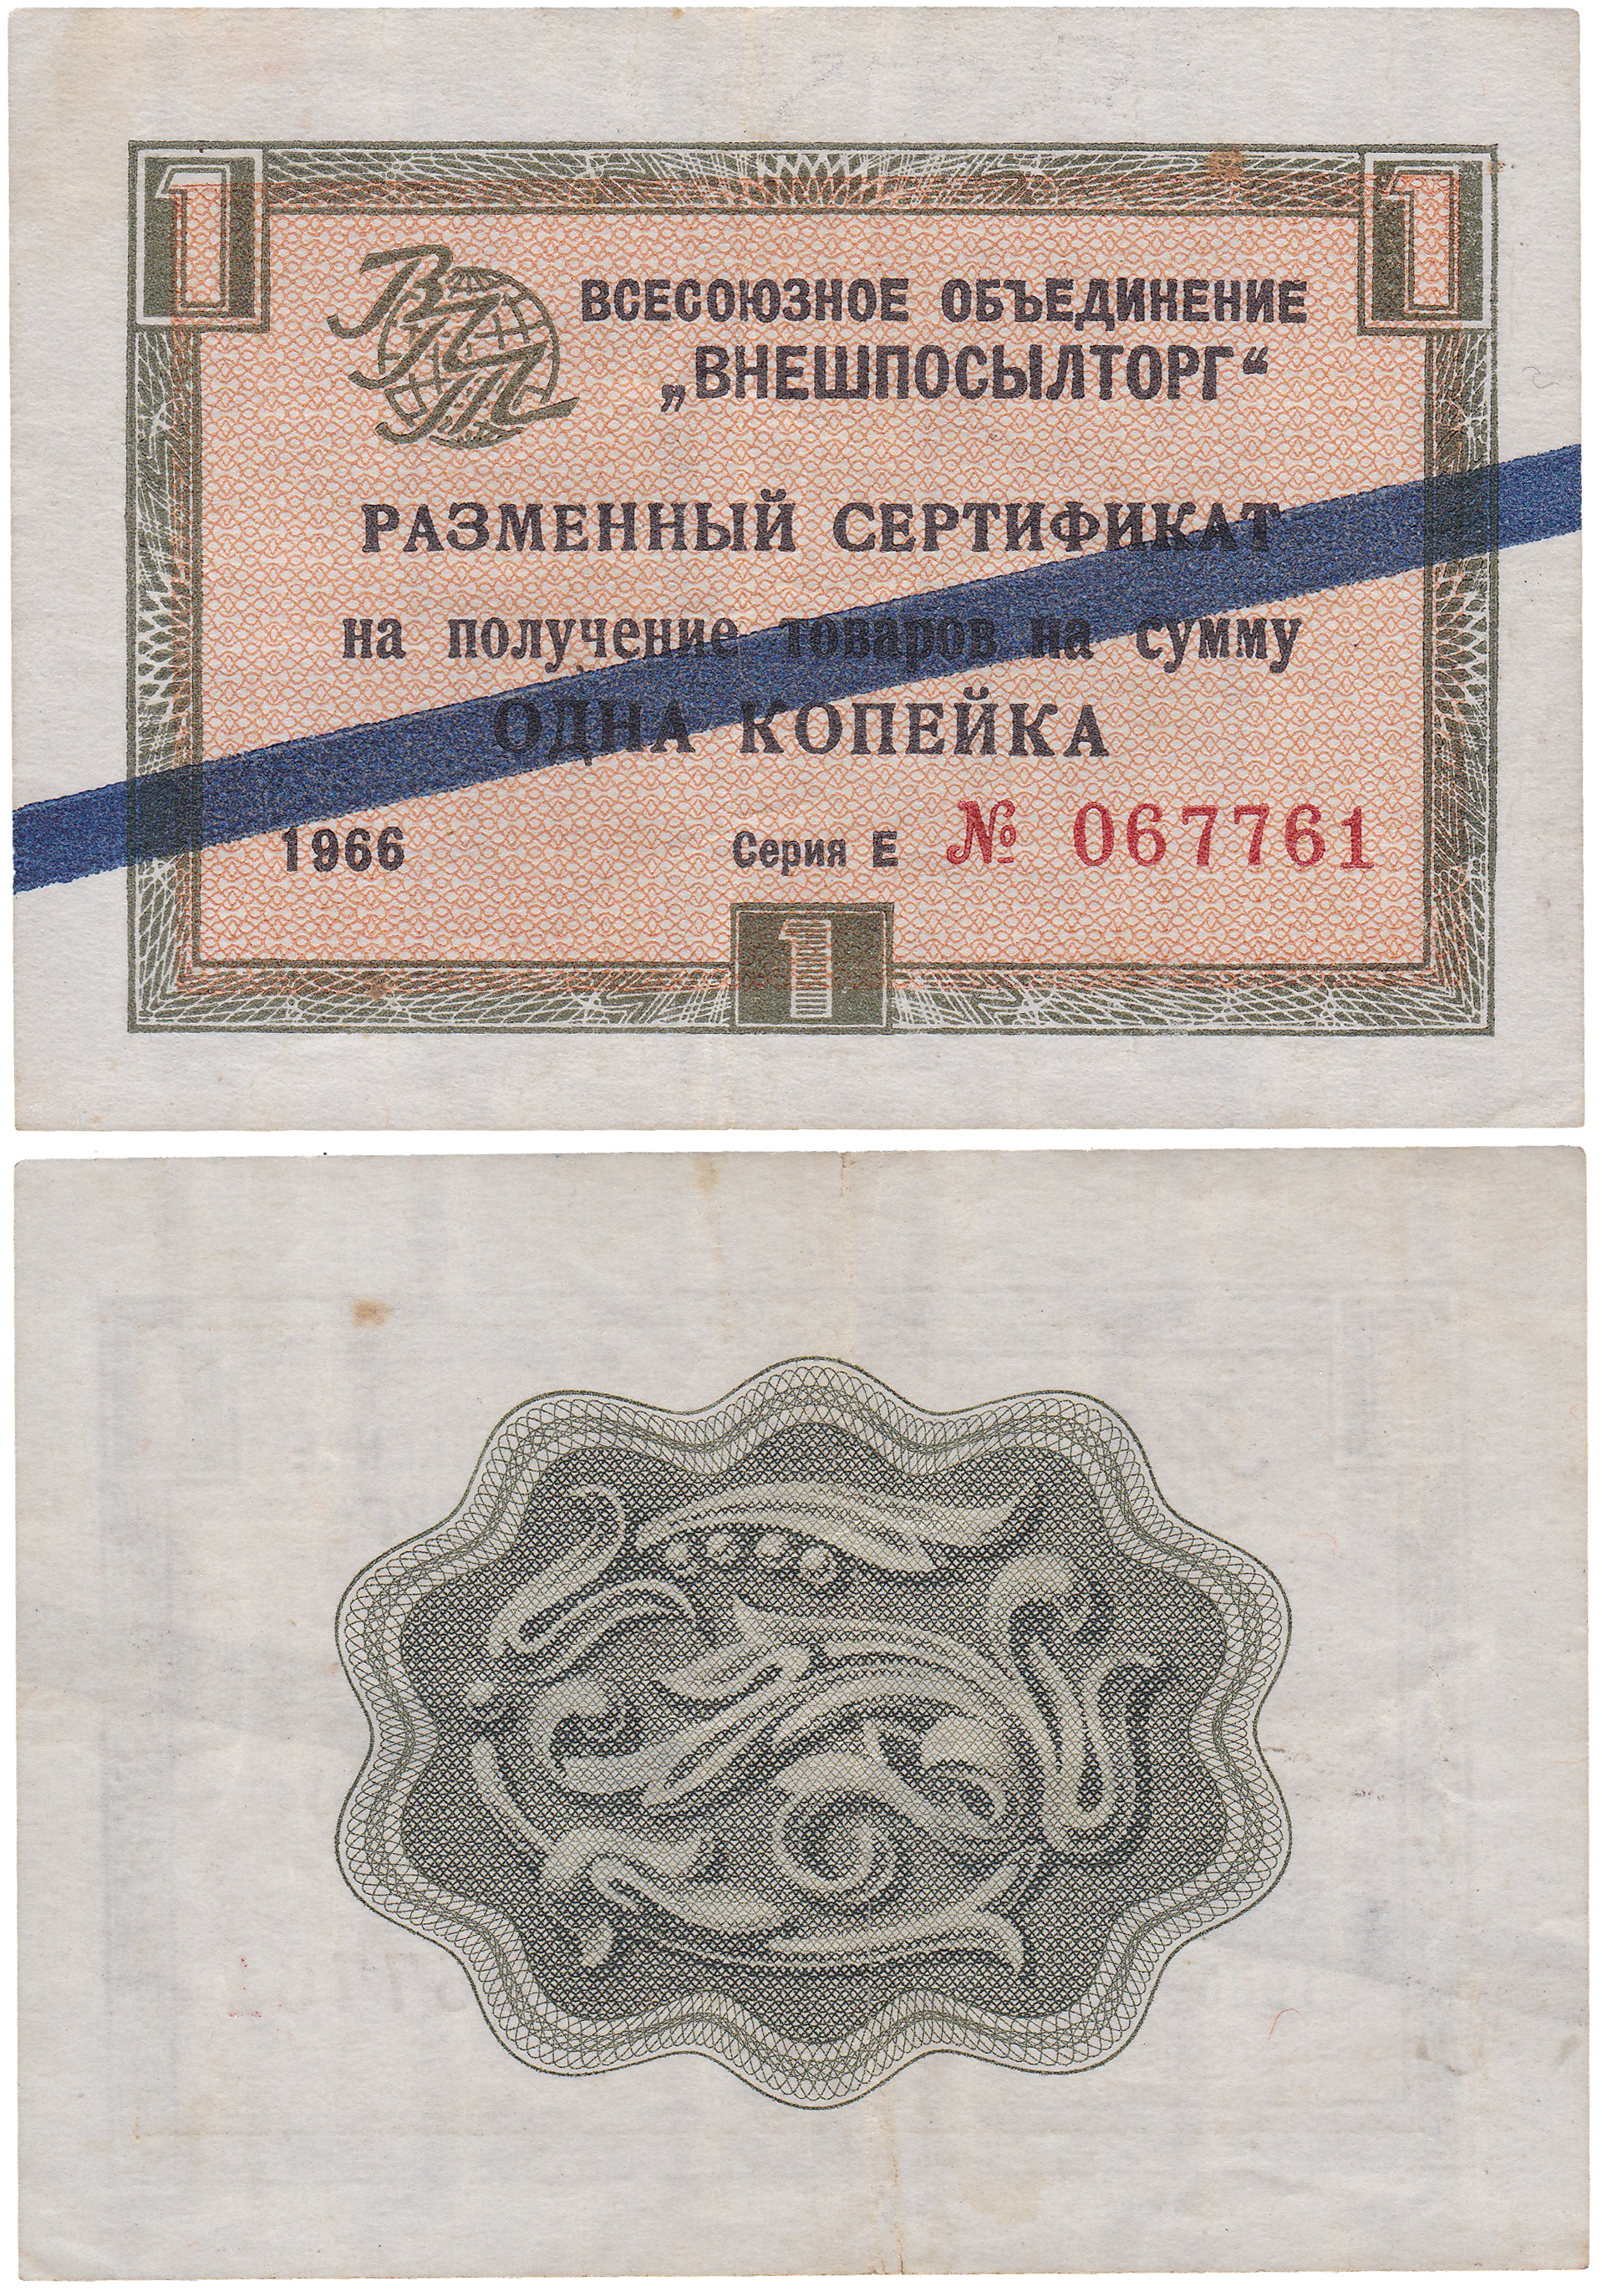 Разменный сертификат на получение товаров на сумму 1 Копейка 1966 год. Всесоюзное объединение Внешпосылторг. Синяя полоса. Серия Е